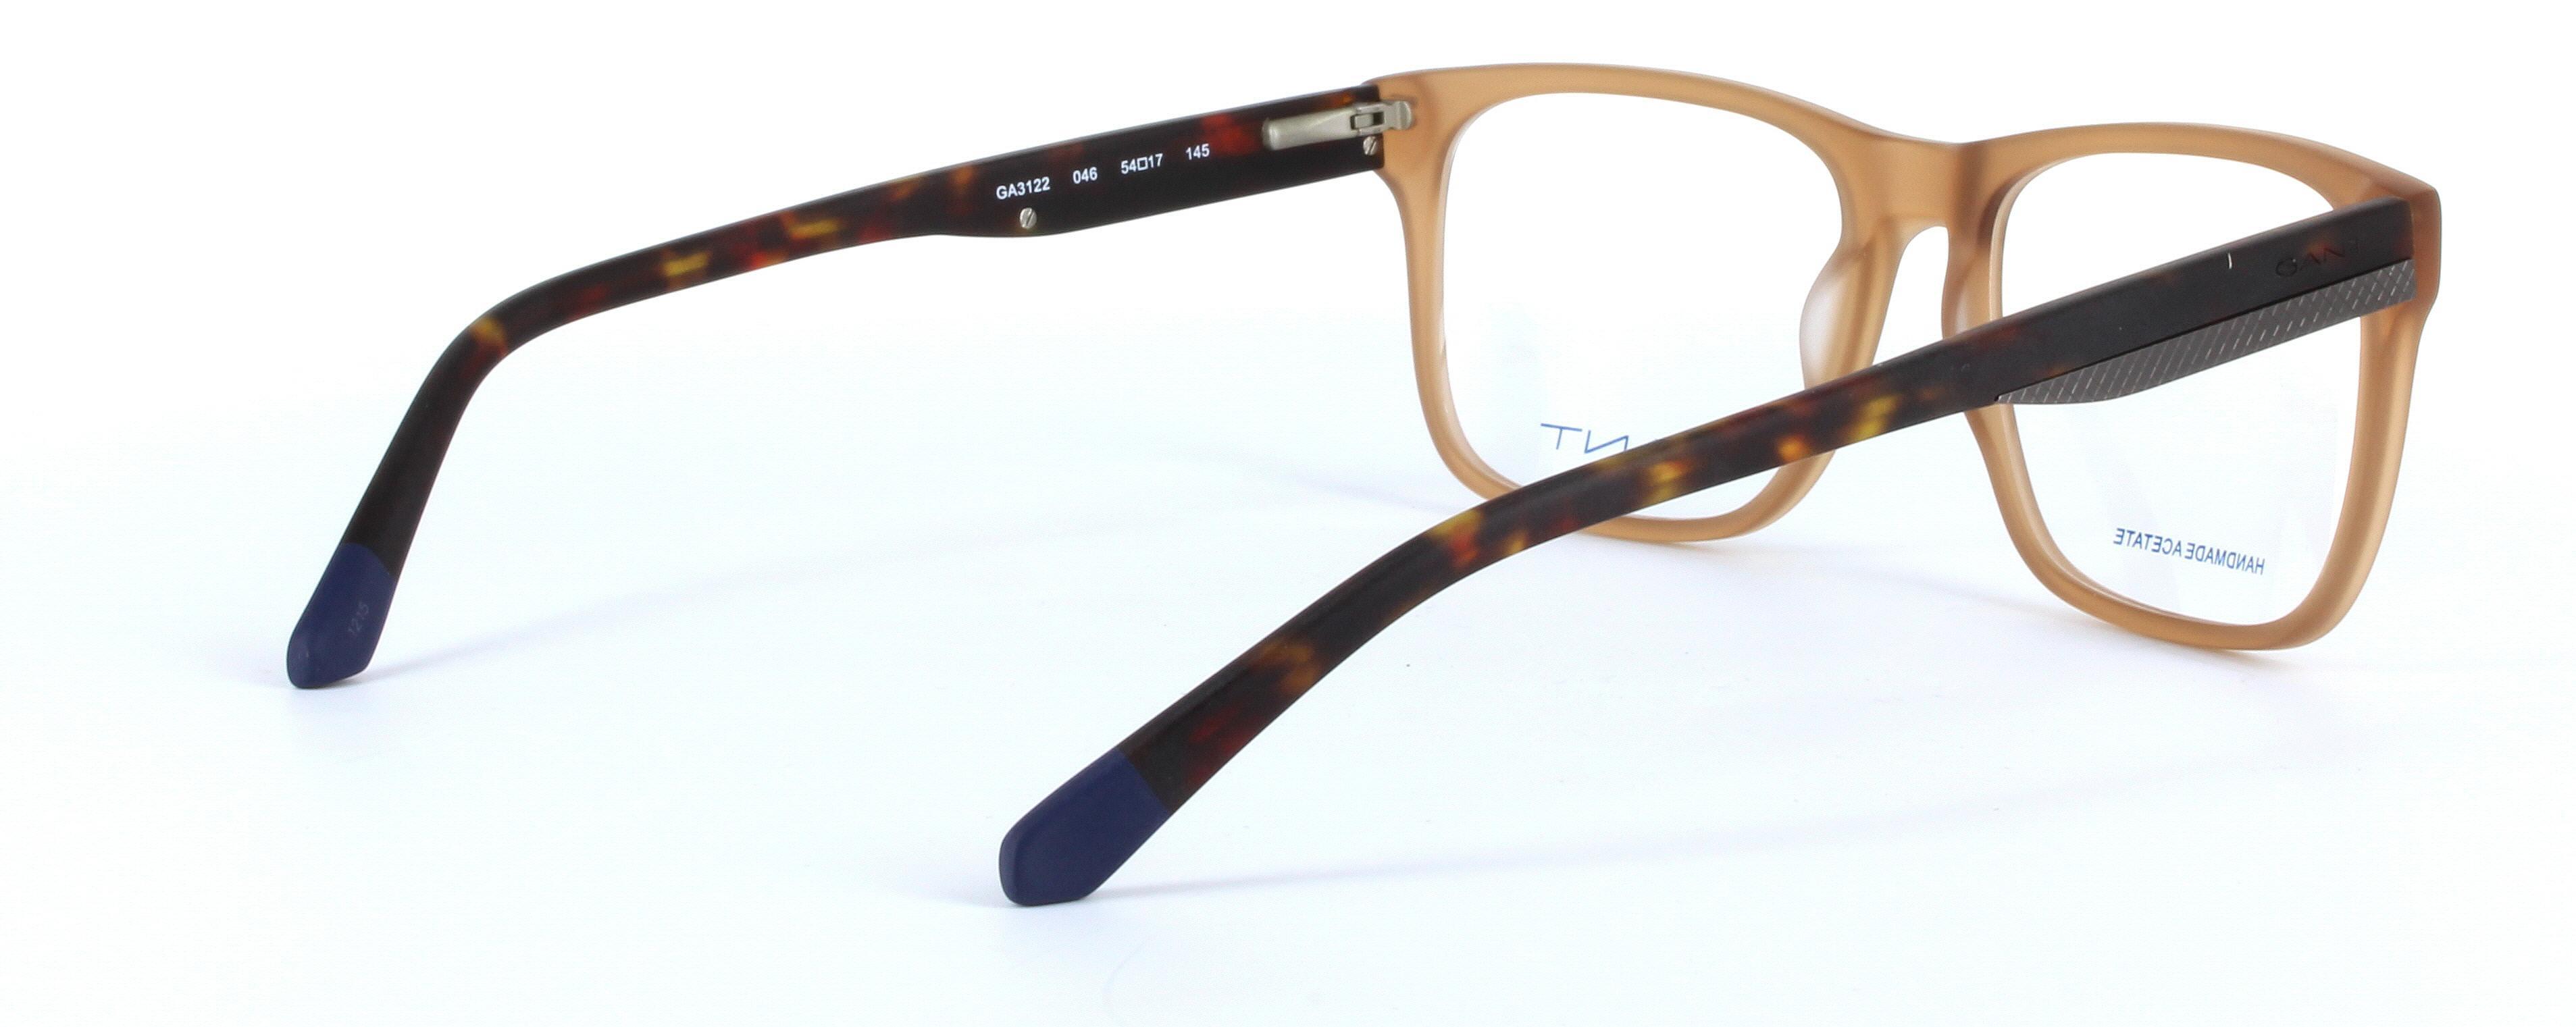 GANT (GA3122-046) Brown Full Rim Oval Rectangular Acetate Glasses - Image View 4